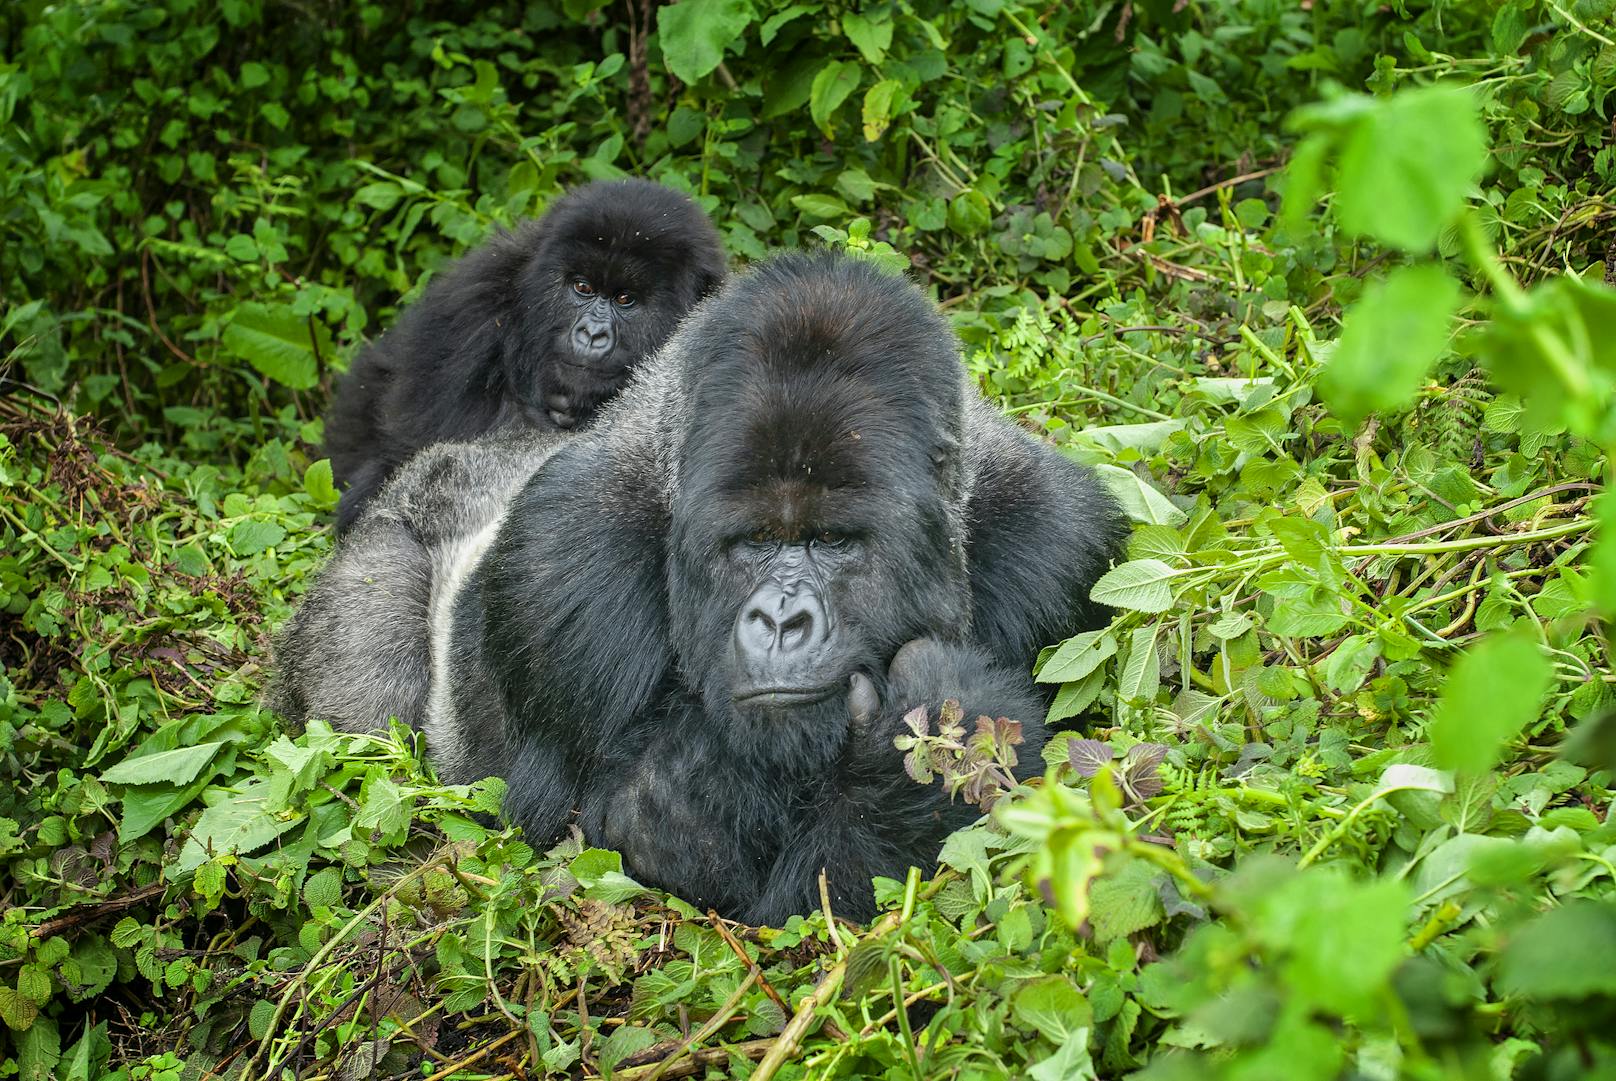 Männliche Gorillas (Silberrücken) sind oft das Oberhaupt einer 30-köpfigen Truppe. Sie mögen furchteinflößend aussehen, haben aber eine Schwäche für ihren Nachwuchs. Man kann sie bei der Fellpflege oder beim Spielen mit den Kleinen beobachten.